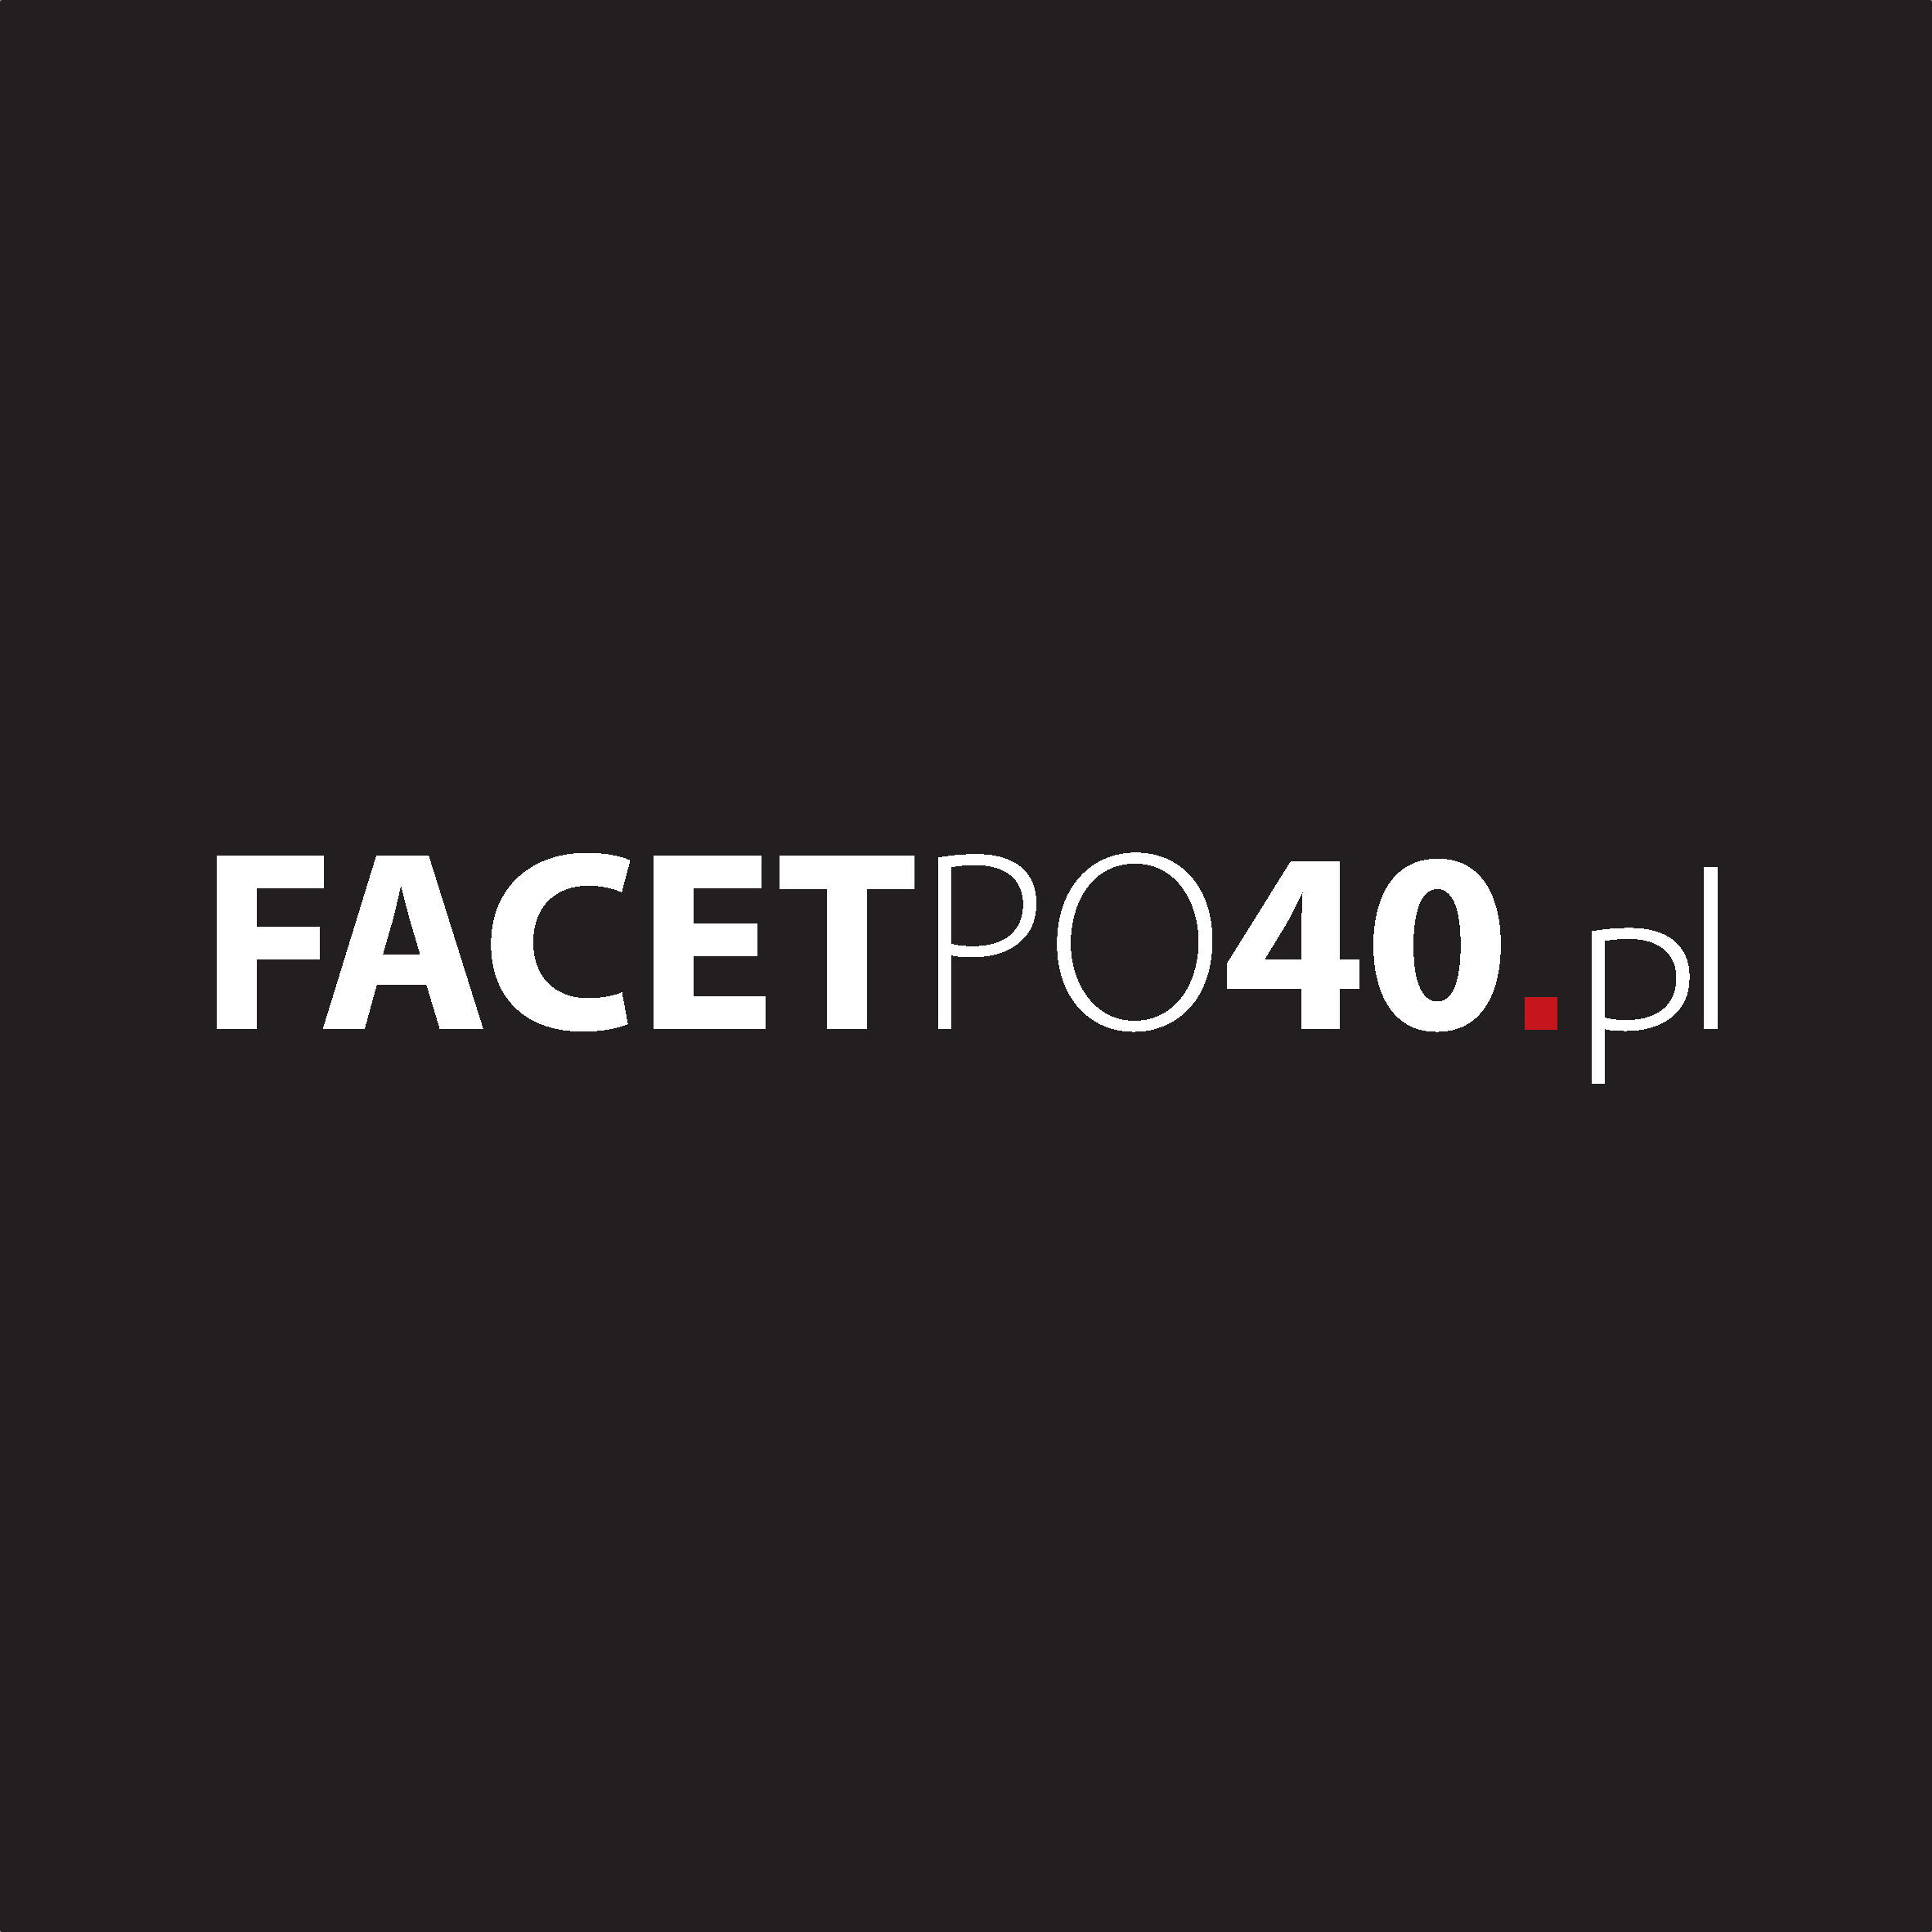 Facetpo40.pl / Michał Grzybowski